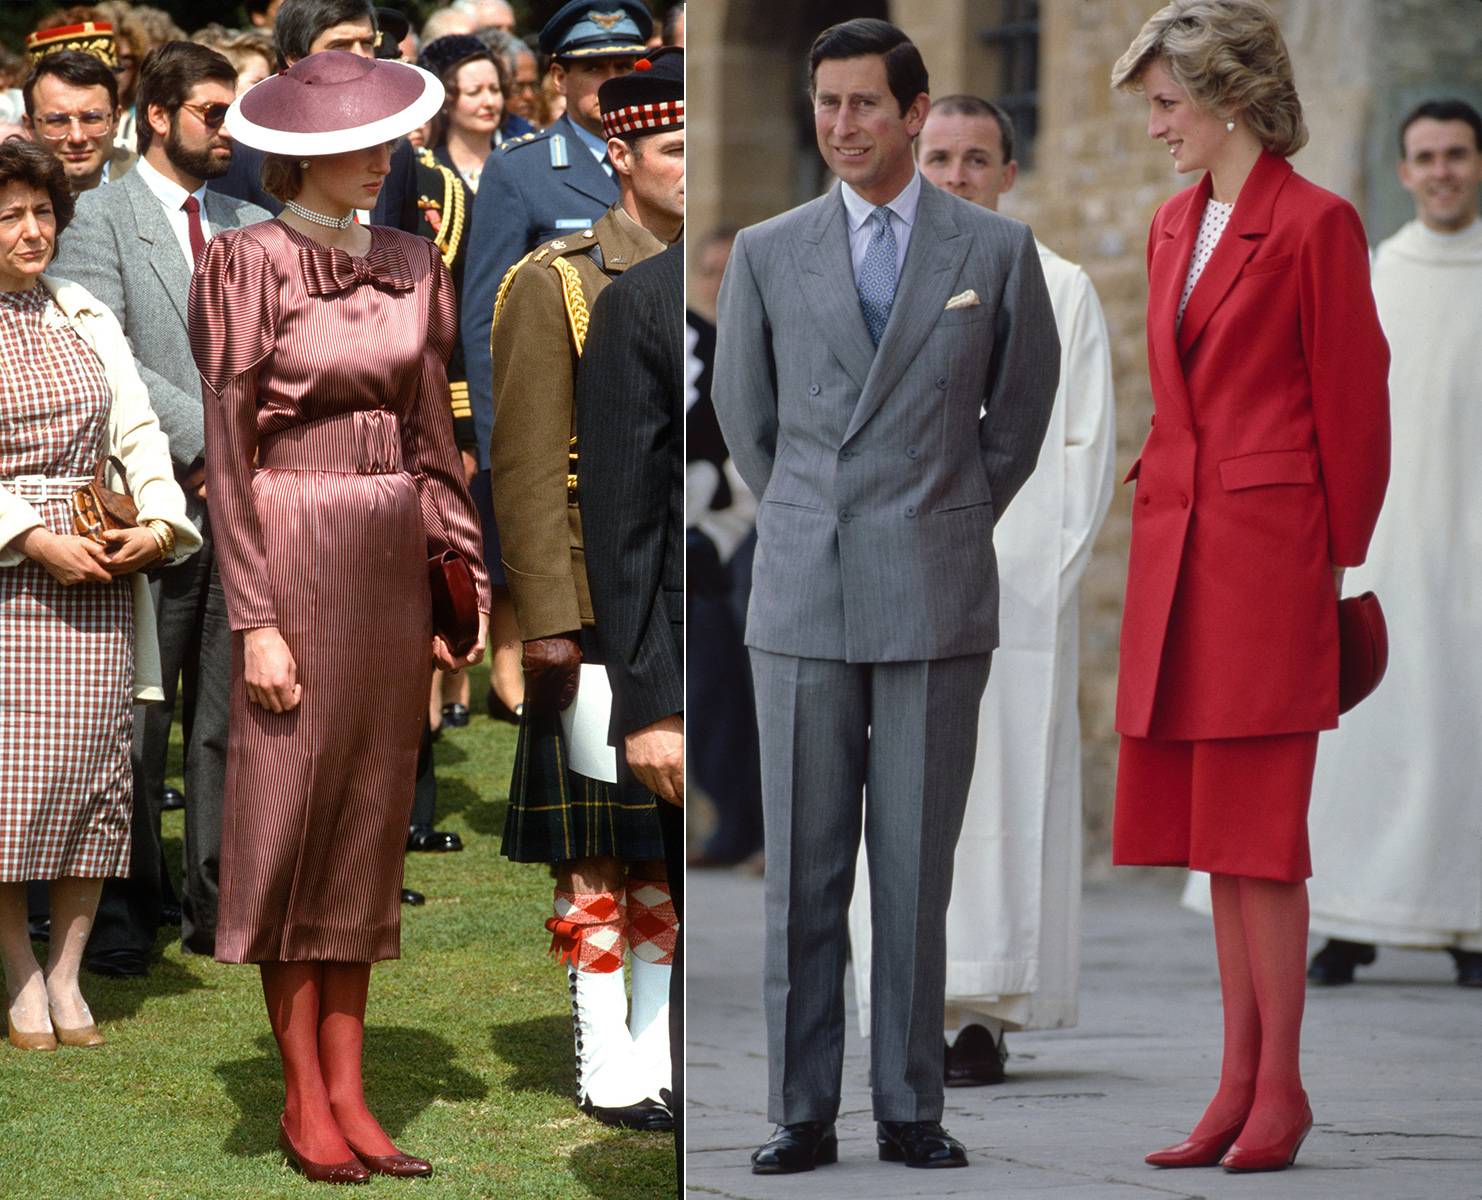 Od lewej: Księżna Diana najczęściej wybierała jednokolorowe zestawy: w 1985 r. założyła czerwone rajstopy do dopasowanej sukienki, kapelusza i czółenek. Księżna Walii do swojego wiśniowo-czerwonego stroju dobrała czerwone rajstopy, czerwone czółenka i czerwoną torebkę. (Fot. Getty Images)